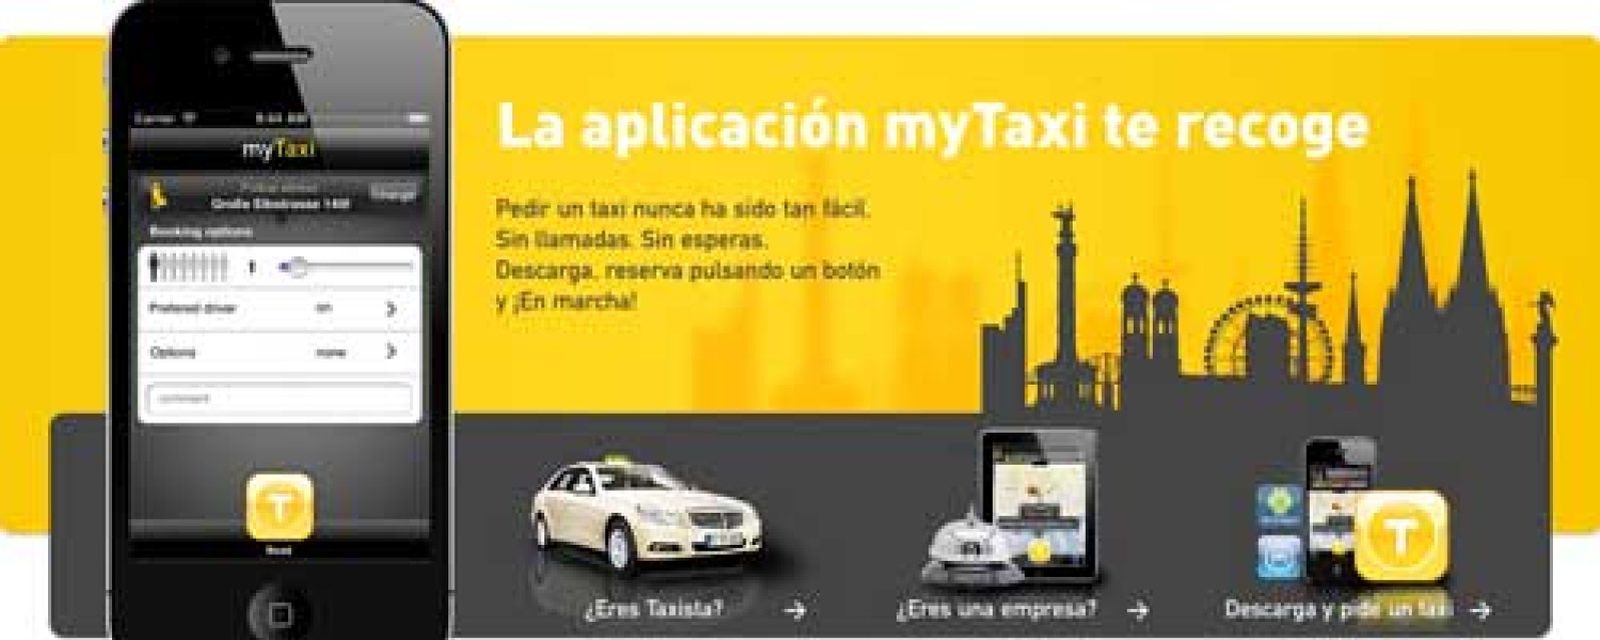 Foto: ¿Necesitas un taxi? En un par de clicks lo tienes